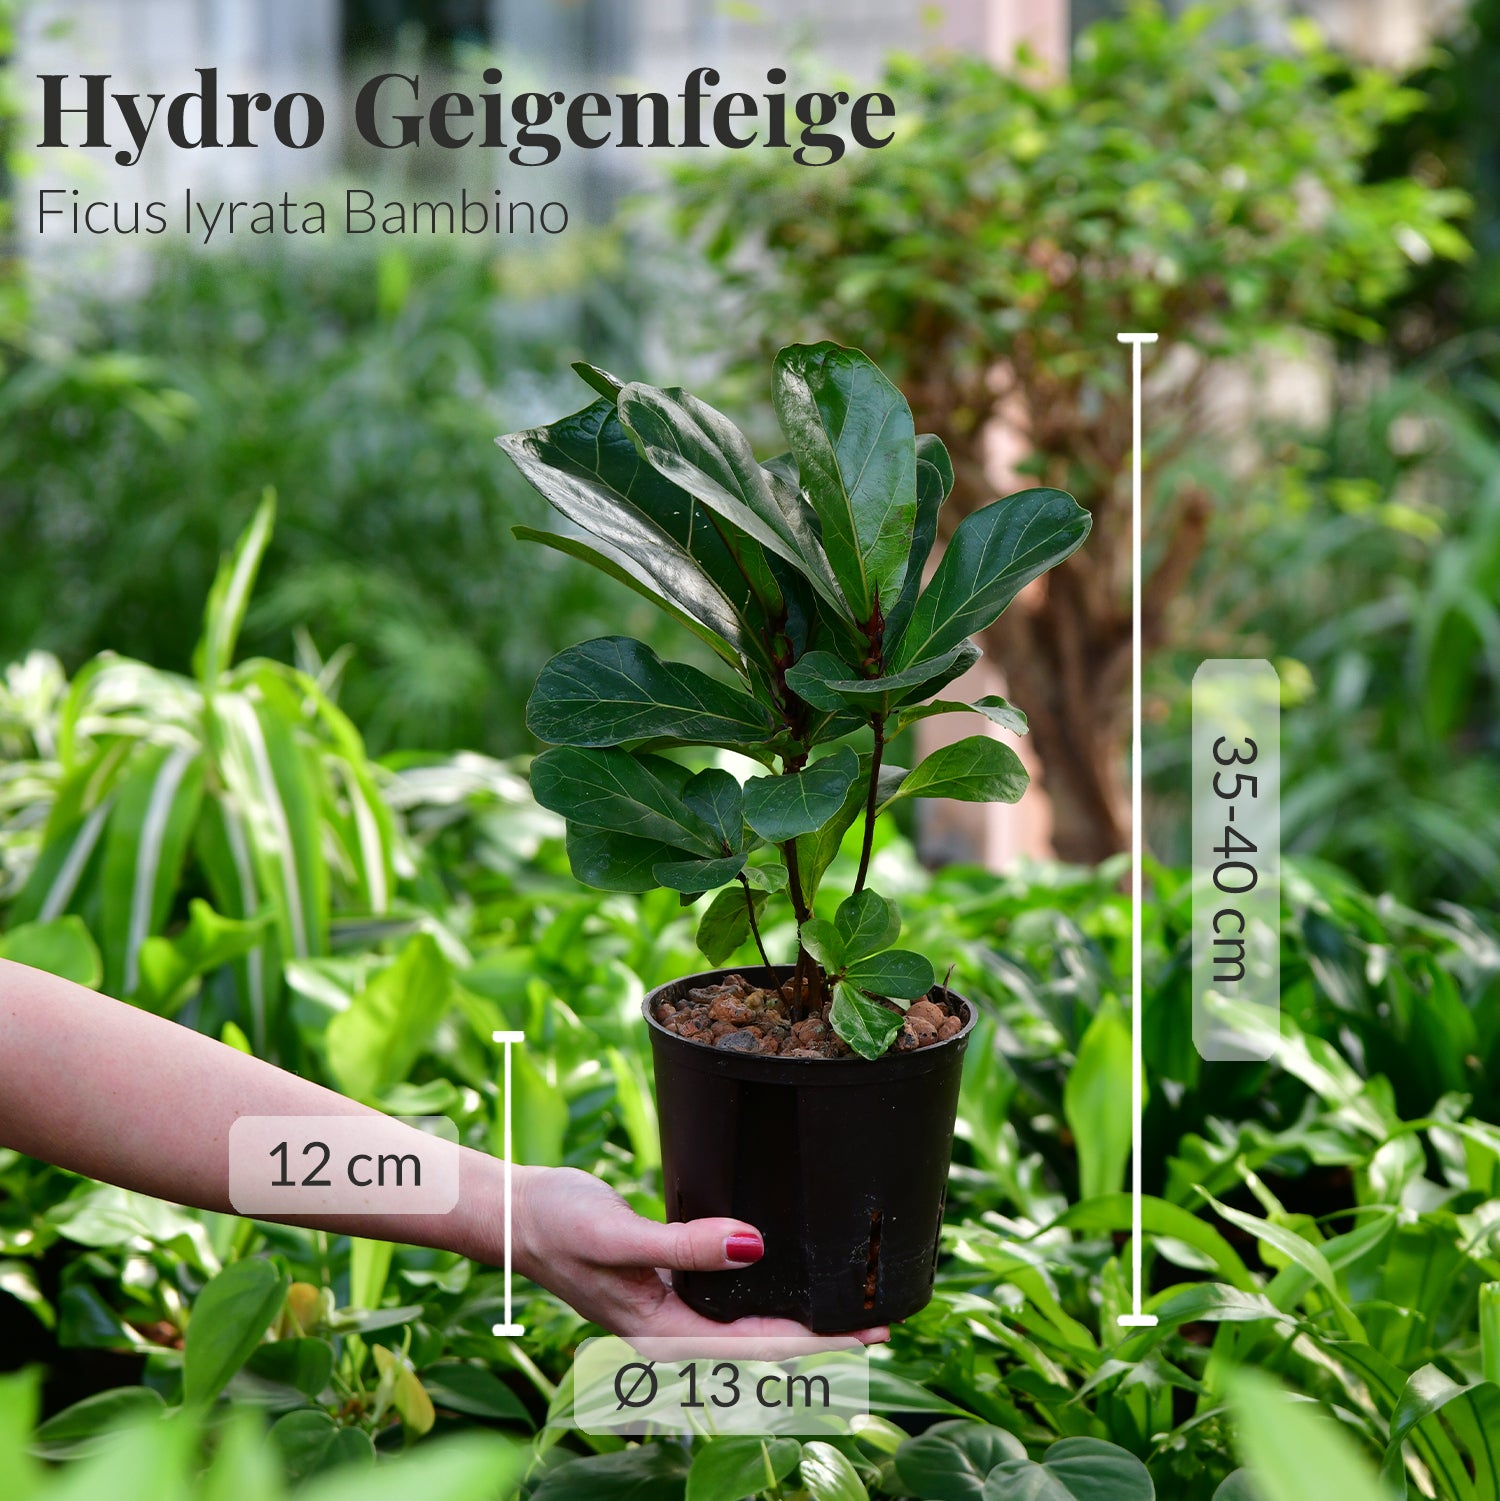 Geliebte Geigenfeige, Hydropflanze 30-40cm